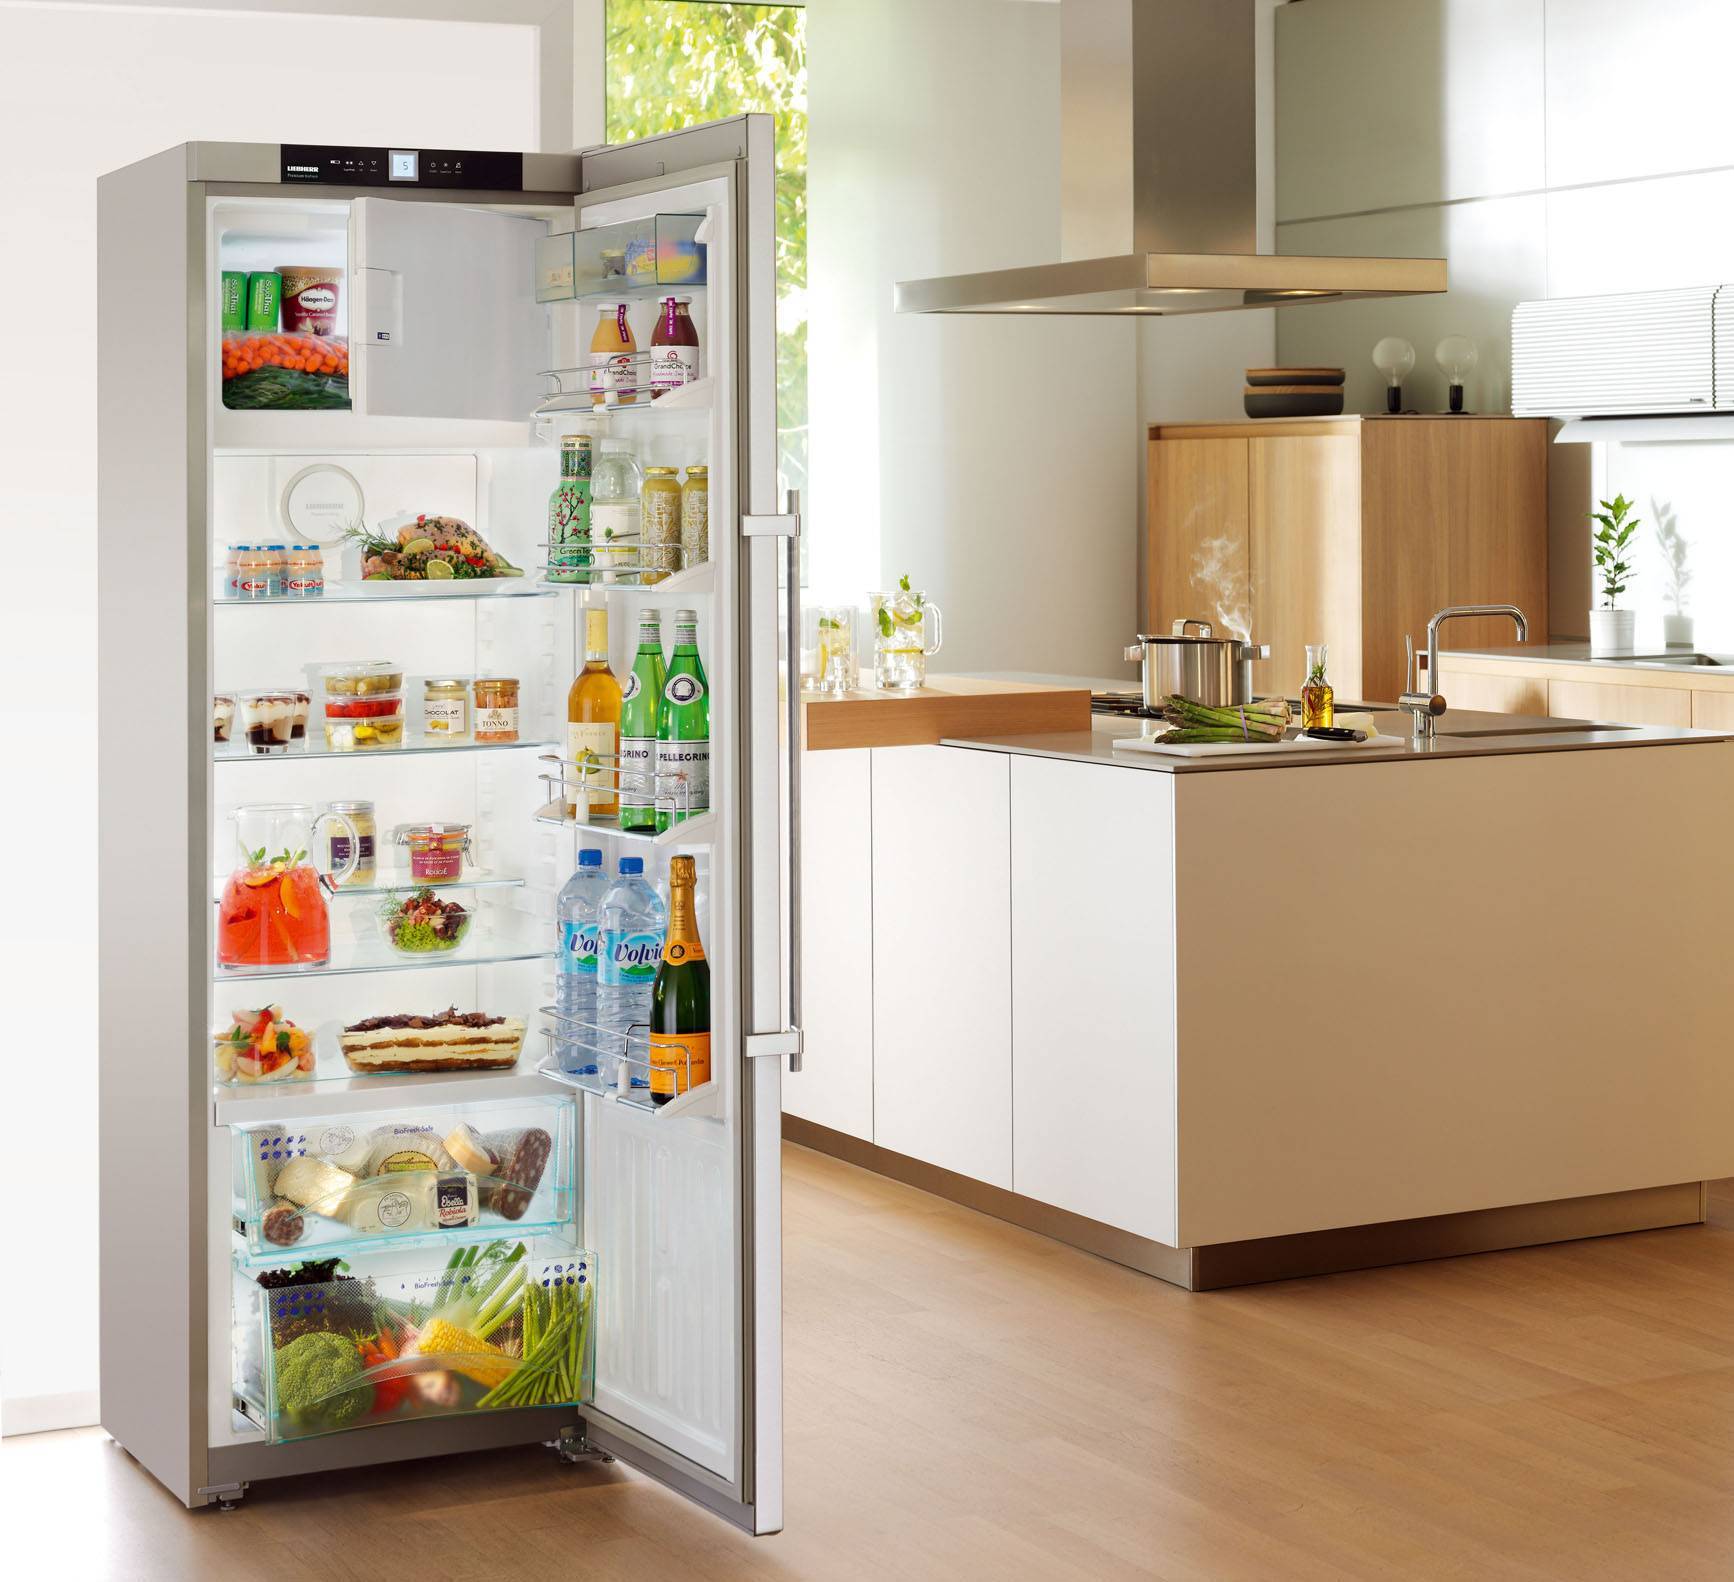 На что обращать внимание при выборе холодильника